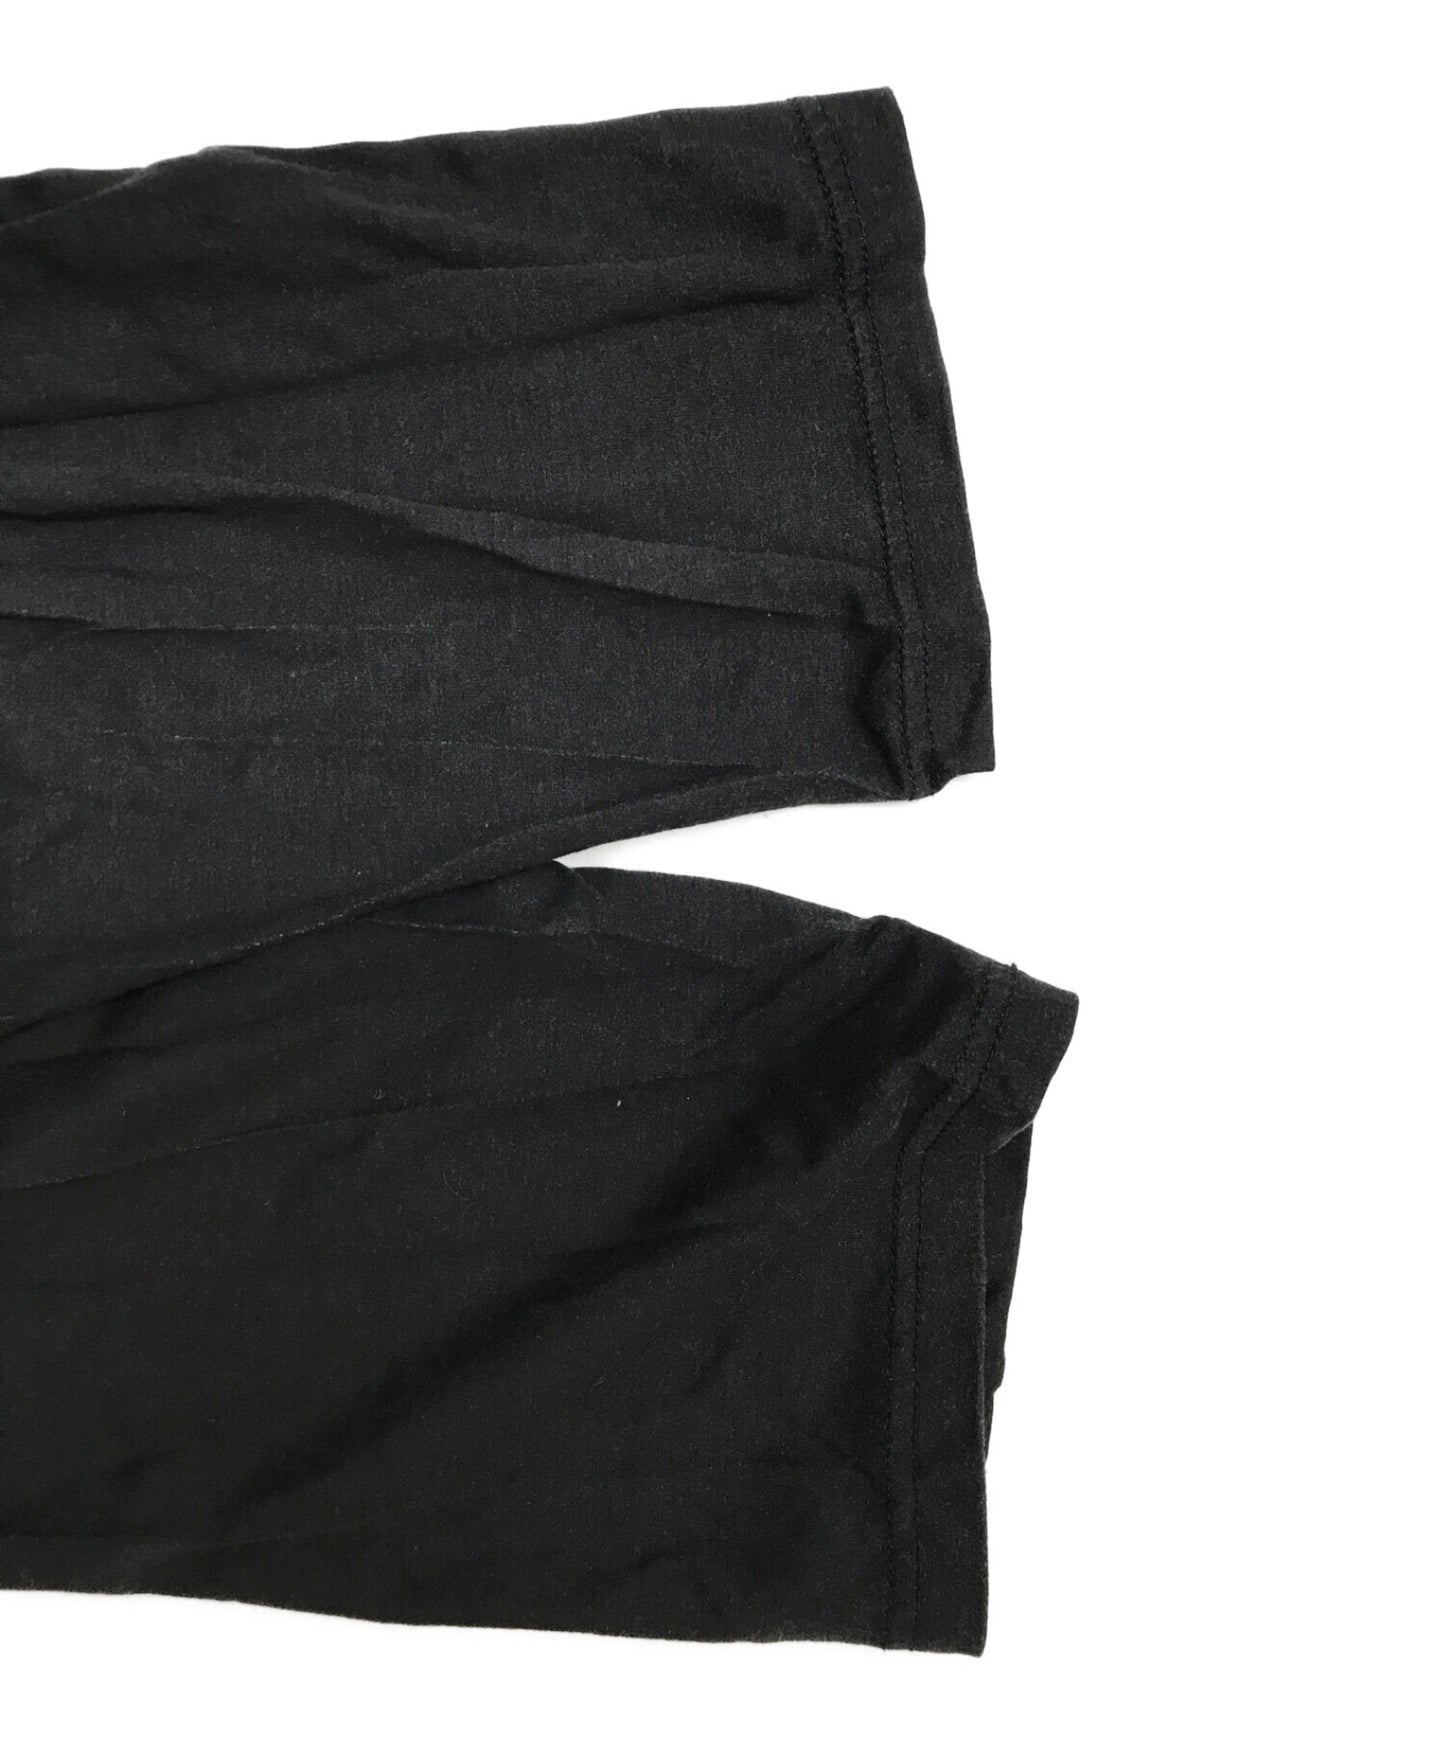 黑色醜聞Yohji Yamamoto消息打印圓頸長袖切割和縫製